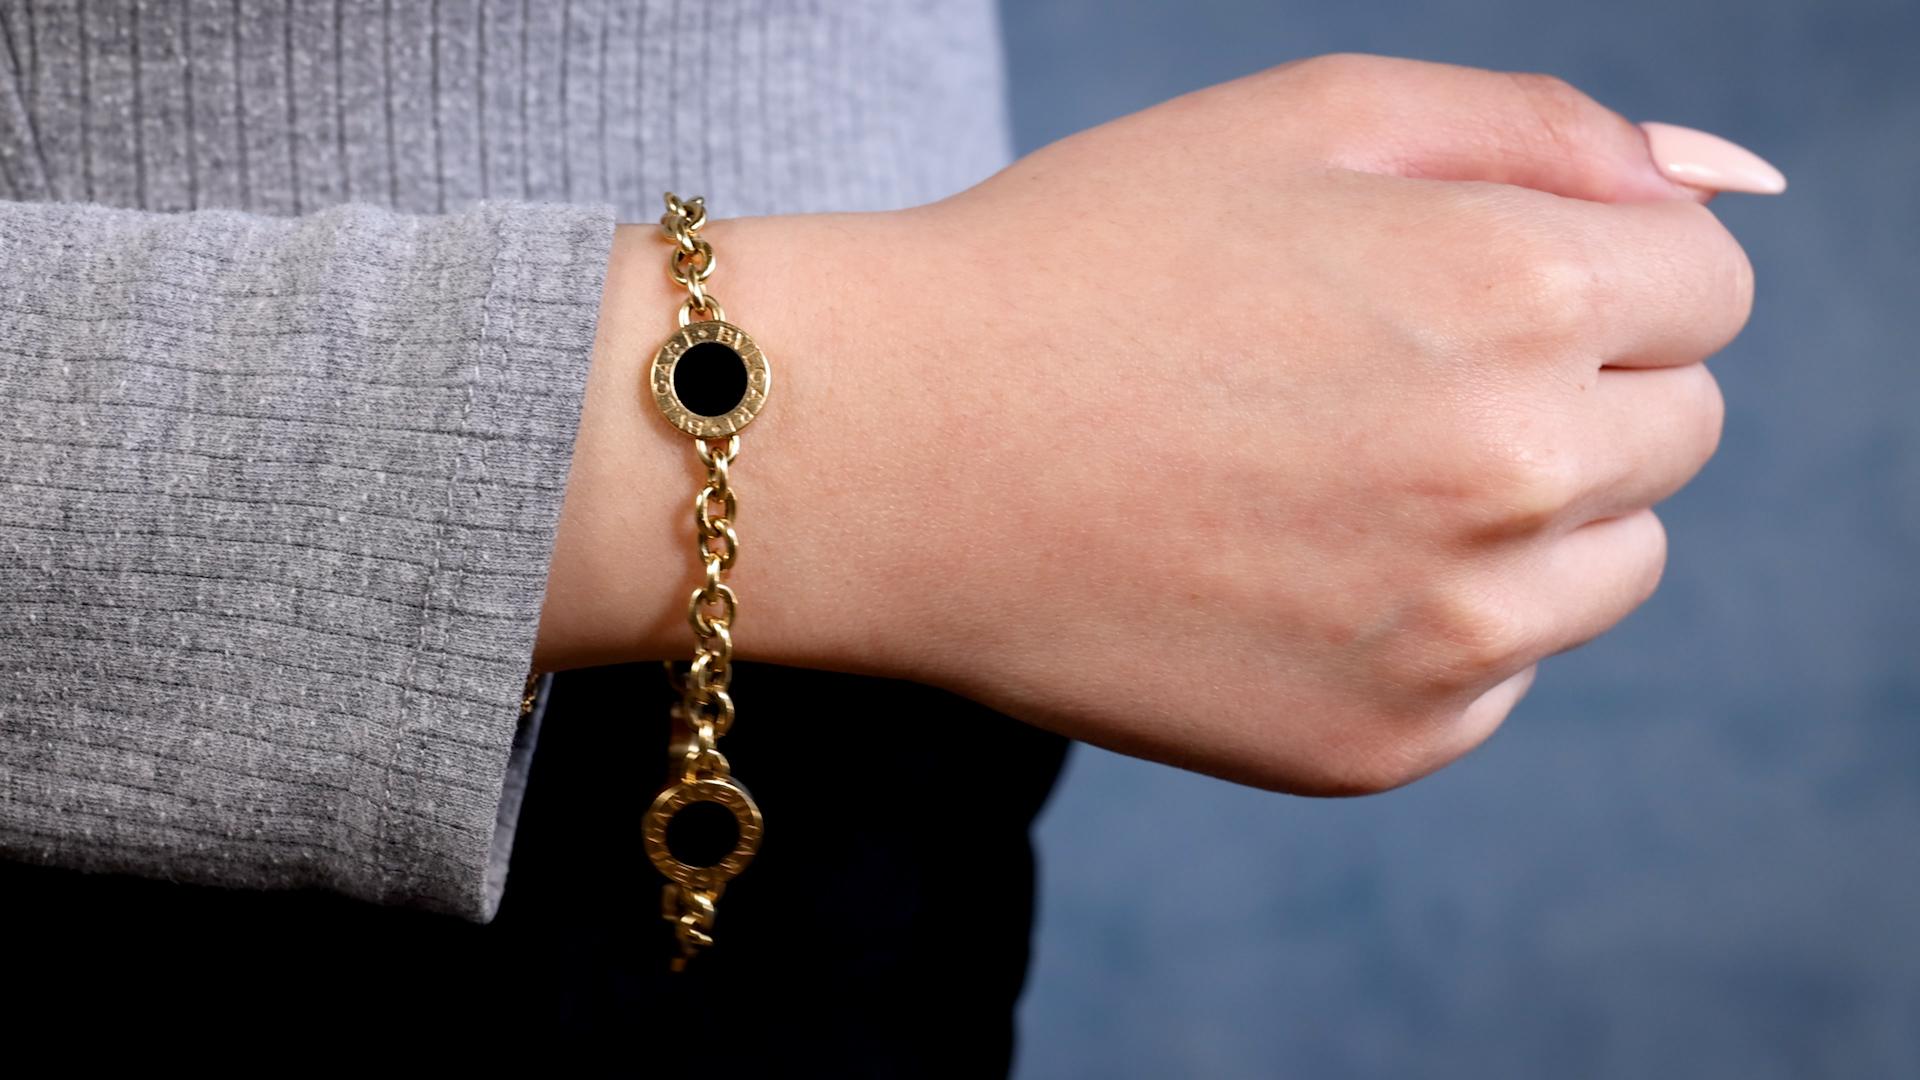 Un bracelet Vintage Bvlgari Italy Onyx 18k Yellow Gold. Avec de l'onyx noir poli. Réalisé en or jaune 18 carats avec marque de pureté et marque de fabrique italienne Bvlgari. Vers 2000. Le bracelet mesure 8 pouces de long.   

A propos de cet